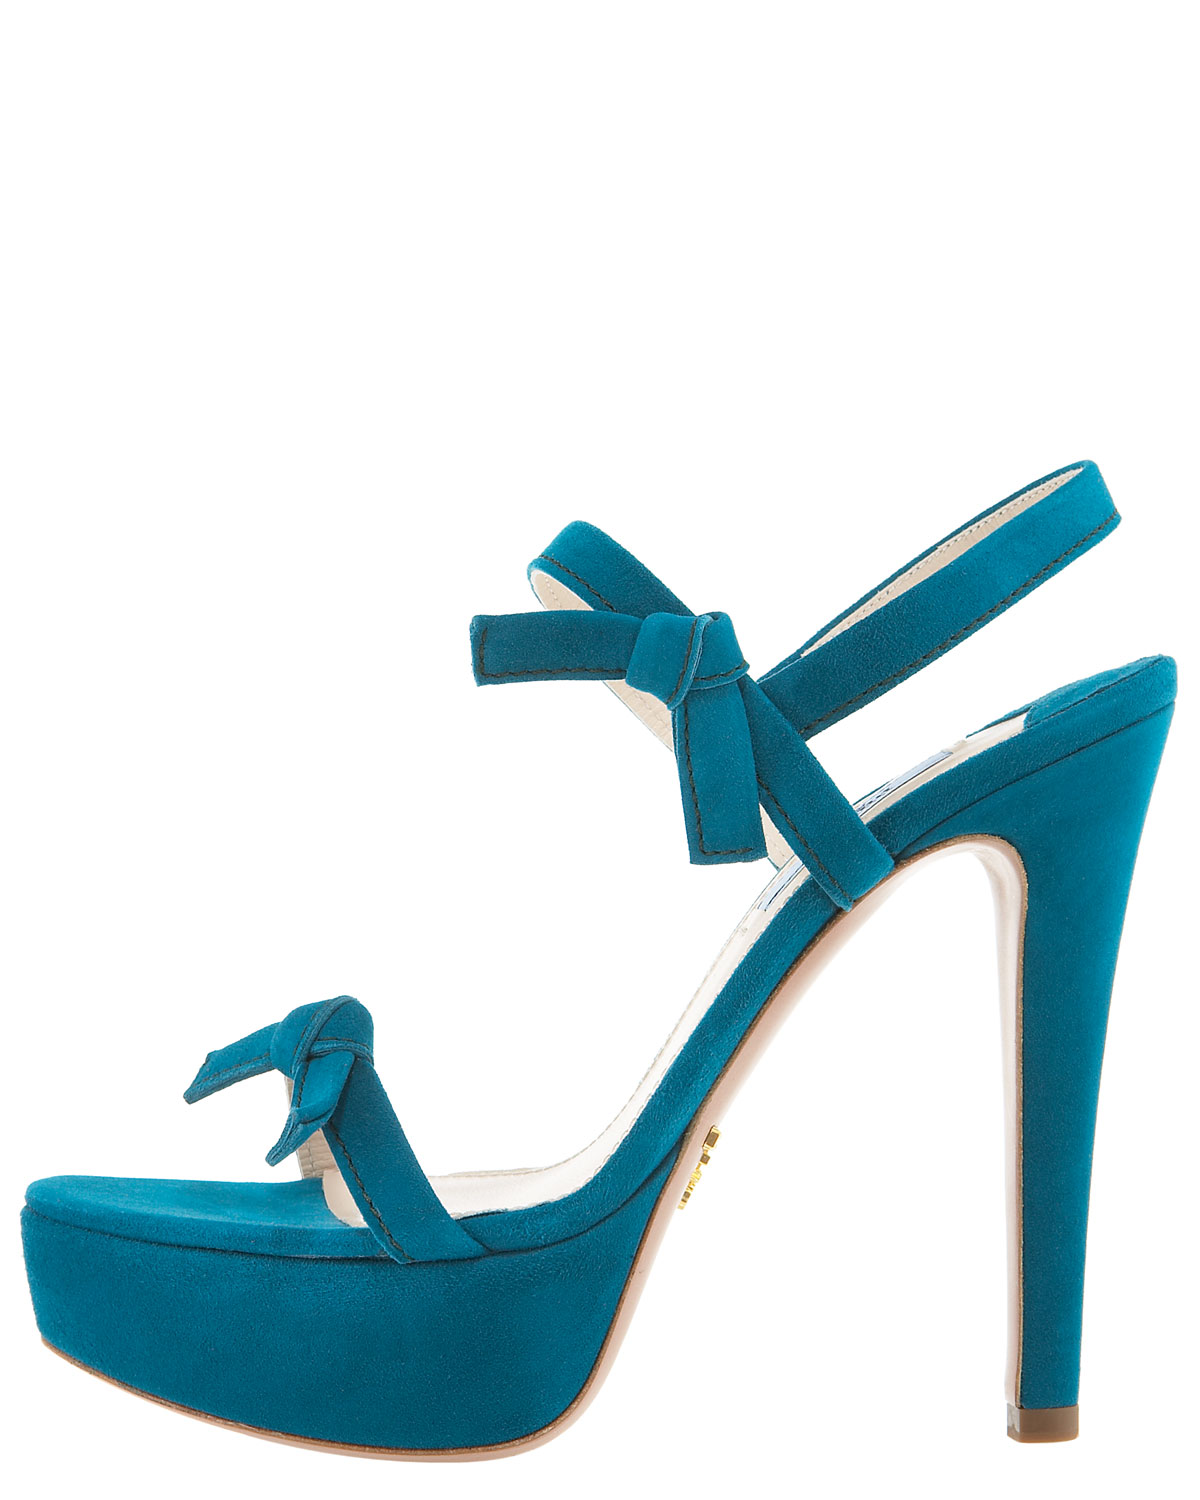 Lyst - Prada Suede Bow Platform Sandal in Blue